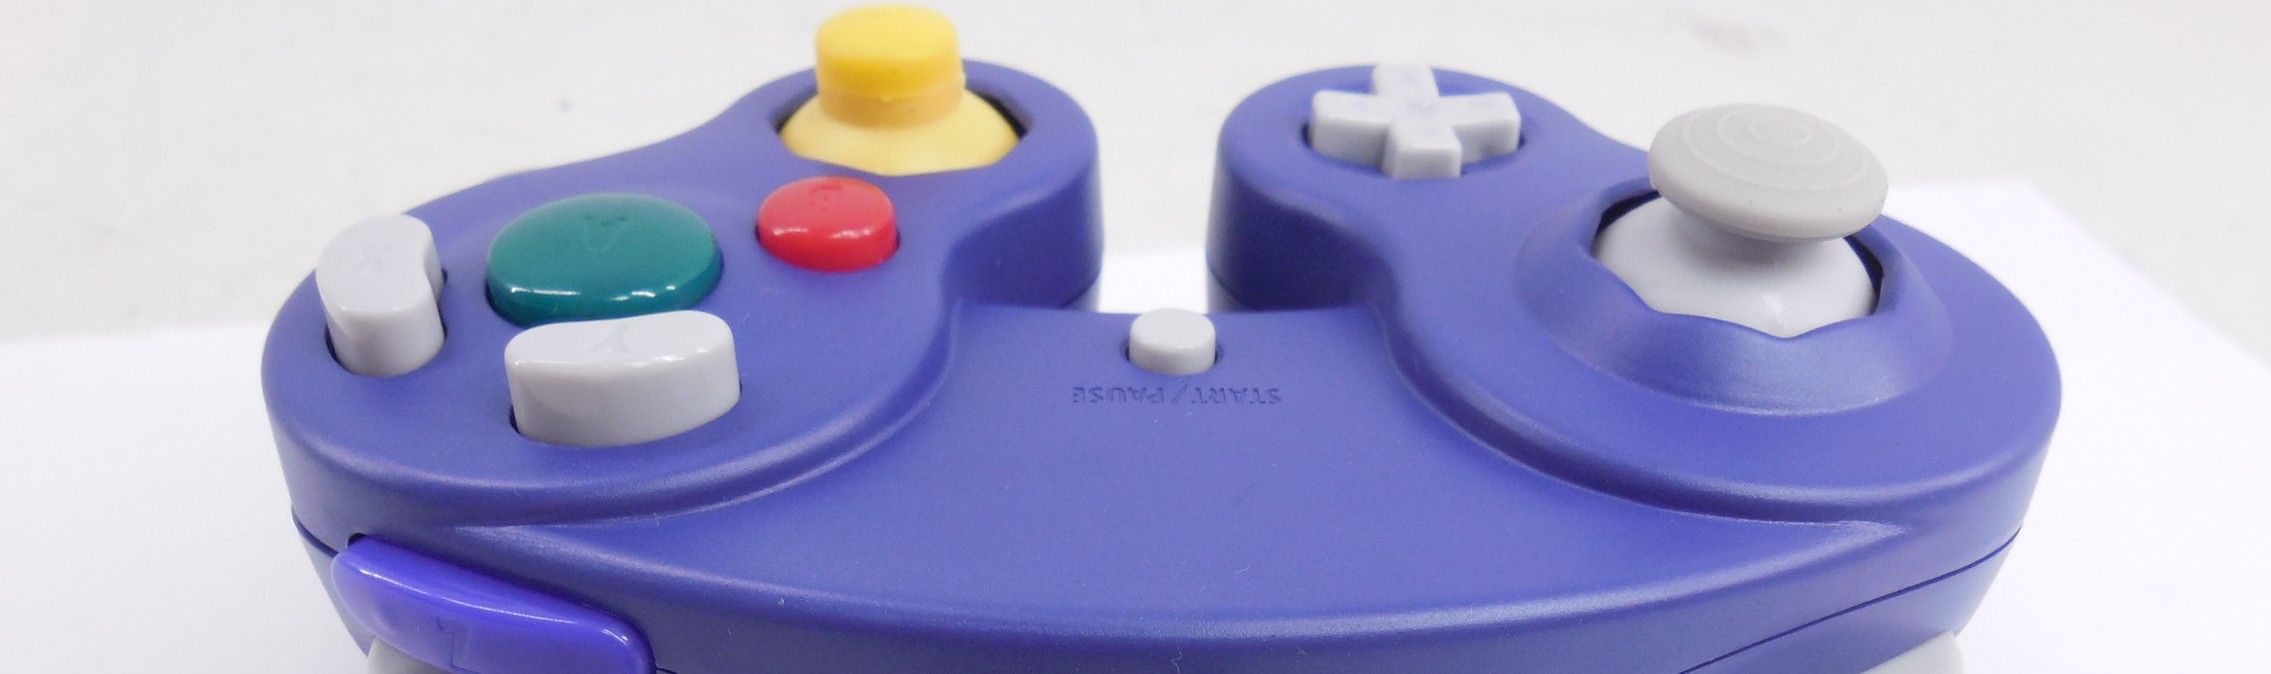 Nintendo Gamecube controller